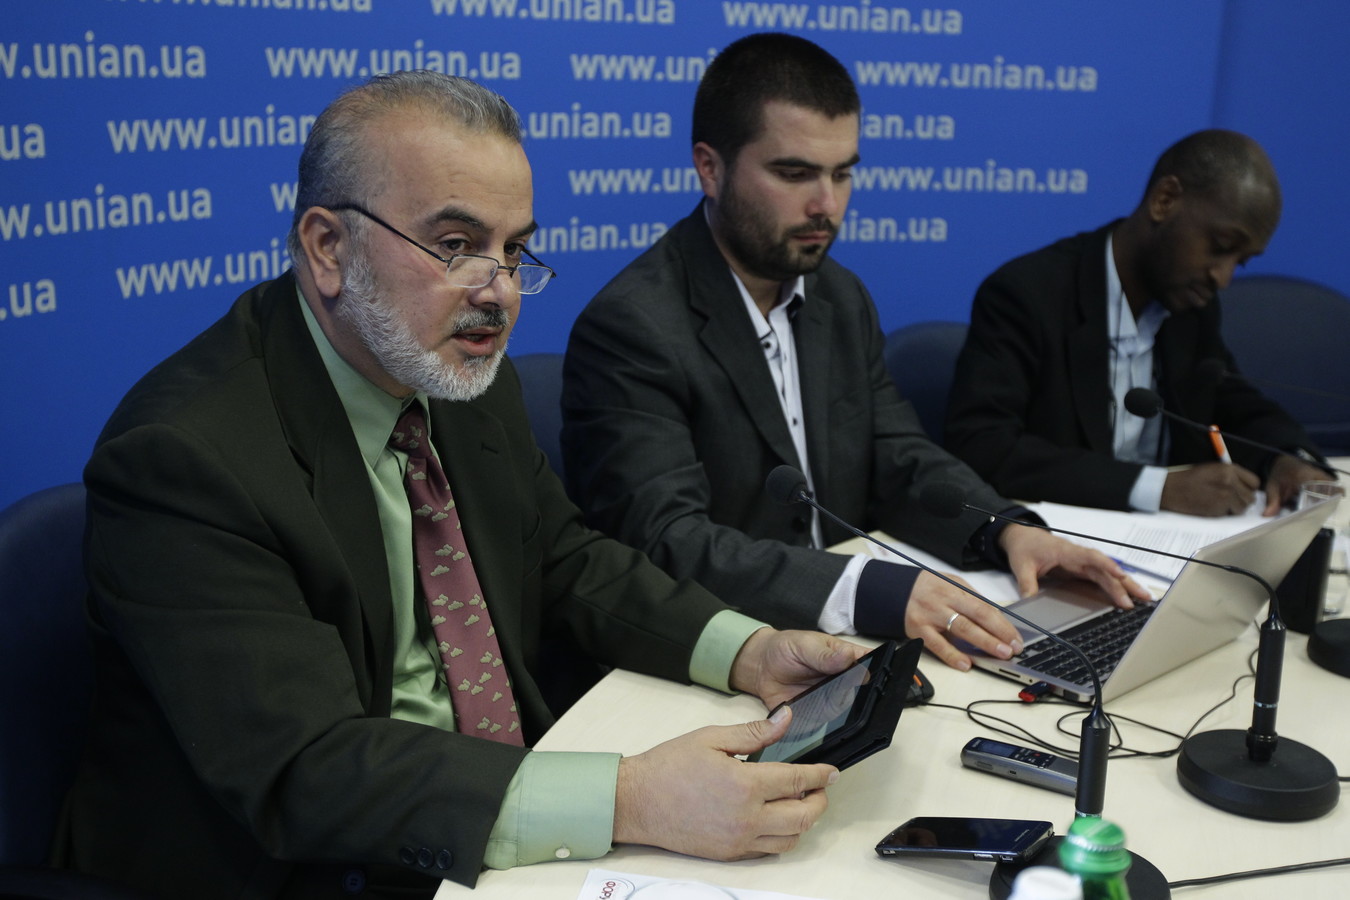 Під час двох годинної прес-конференції представники Хізб ут-Тахрір відповіли на питання журналістів про діяльність партії в Україні та за кордоном.